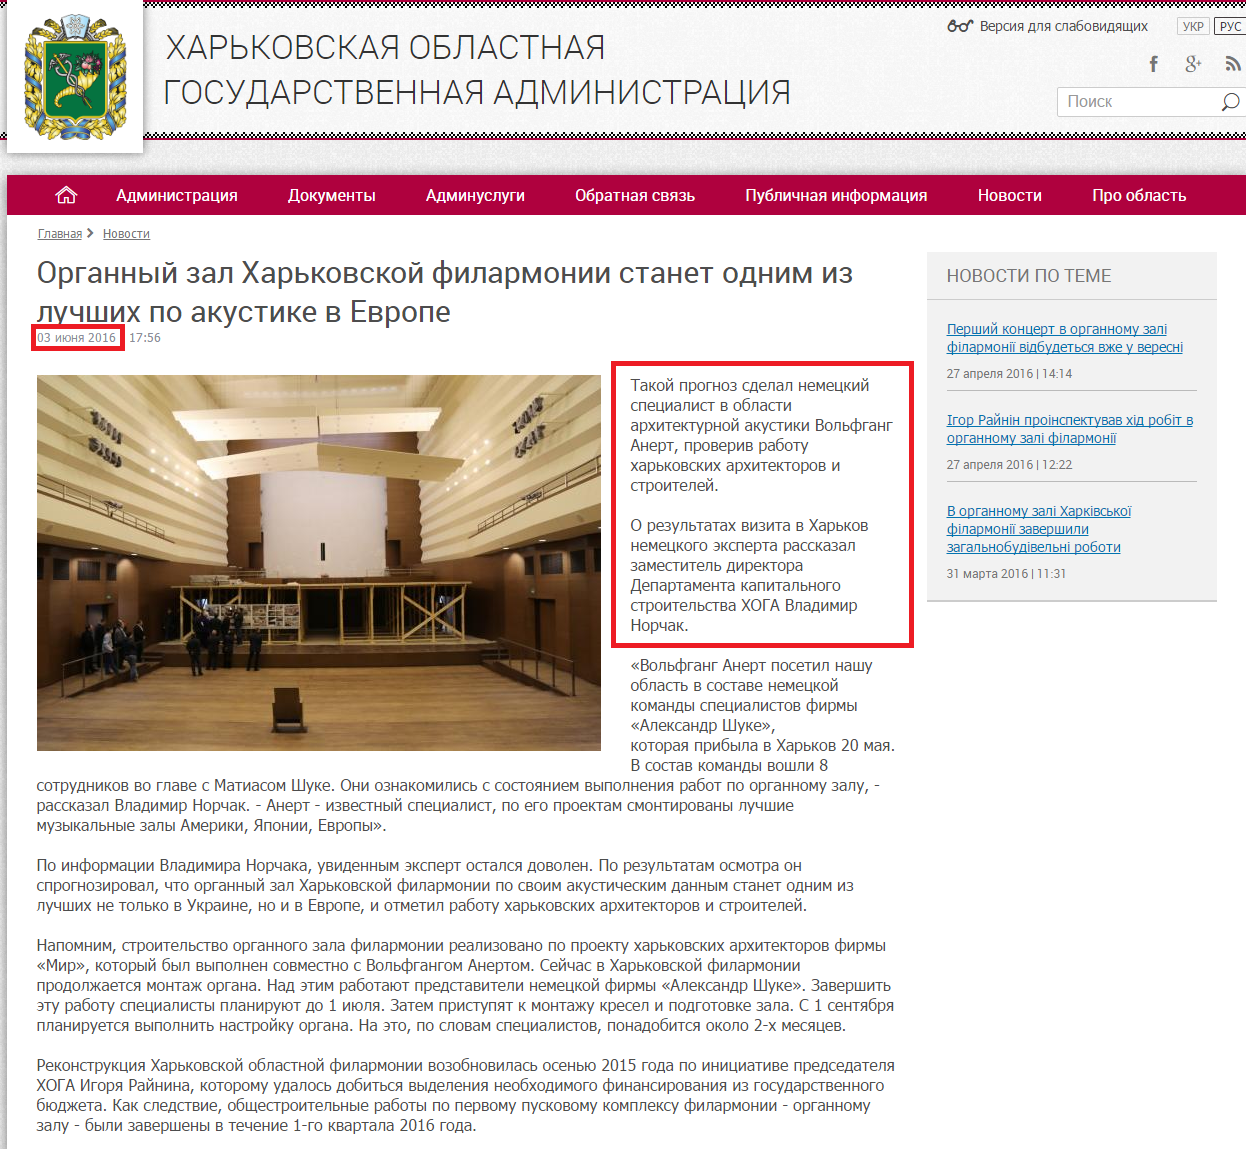 http://kharkivoda.gov.ua/ru/news/81132